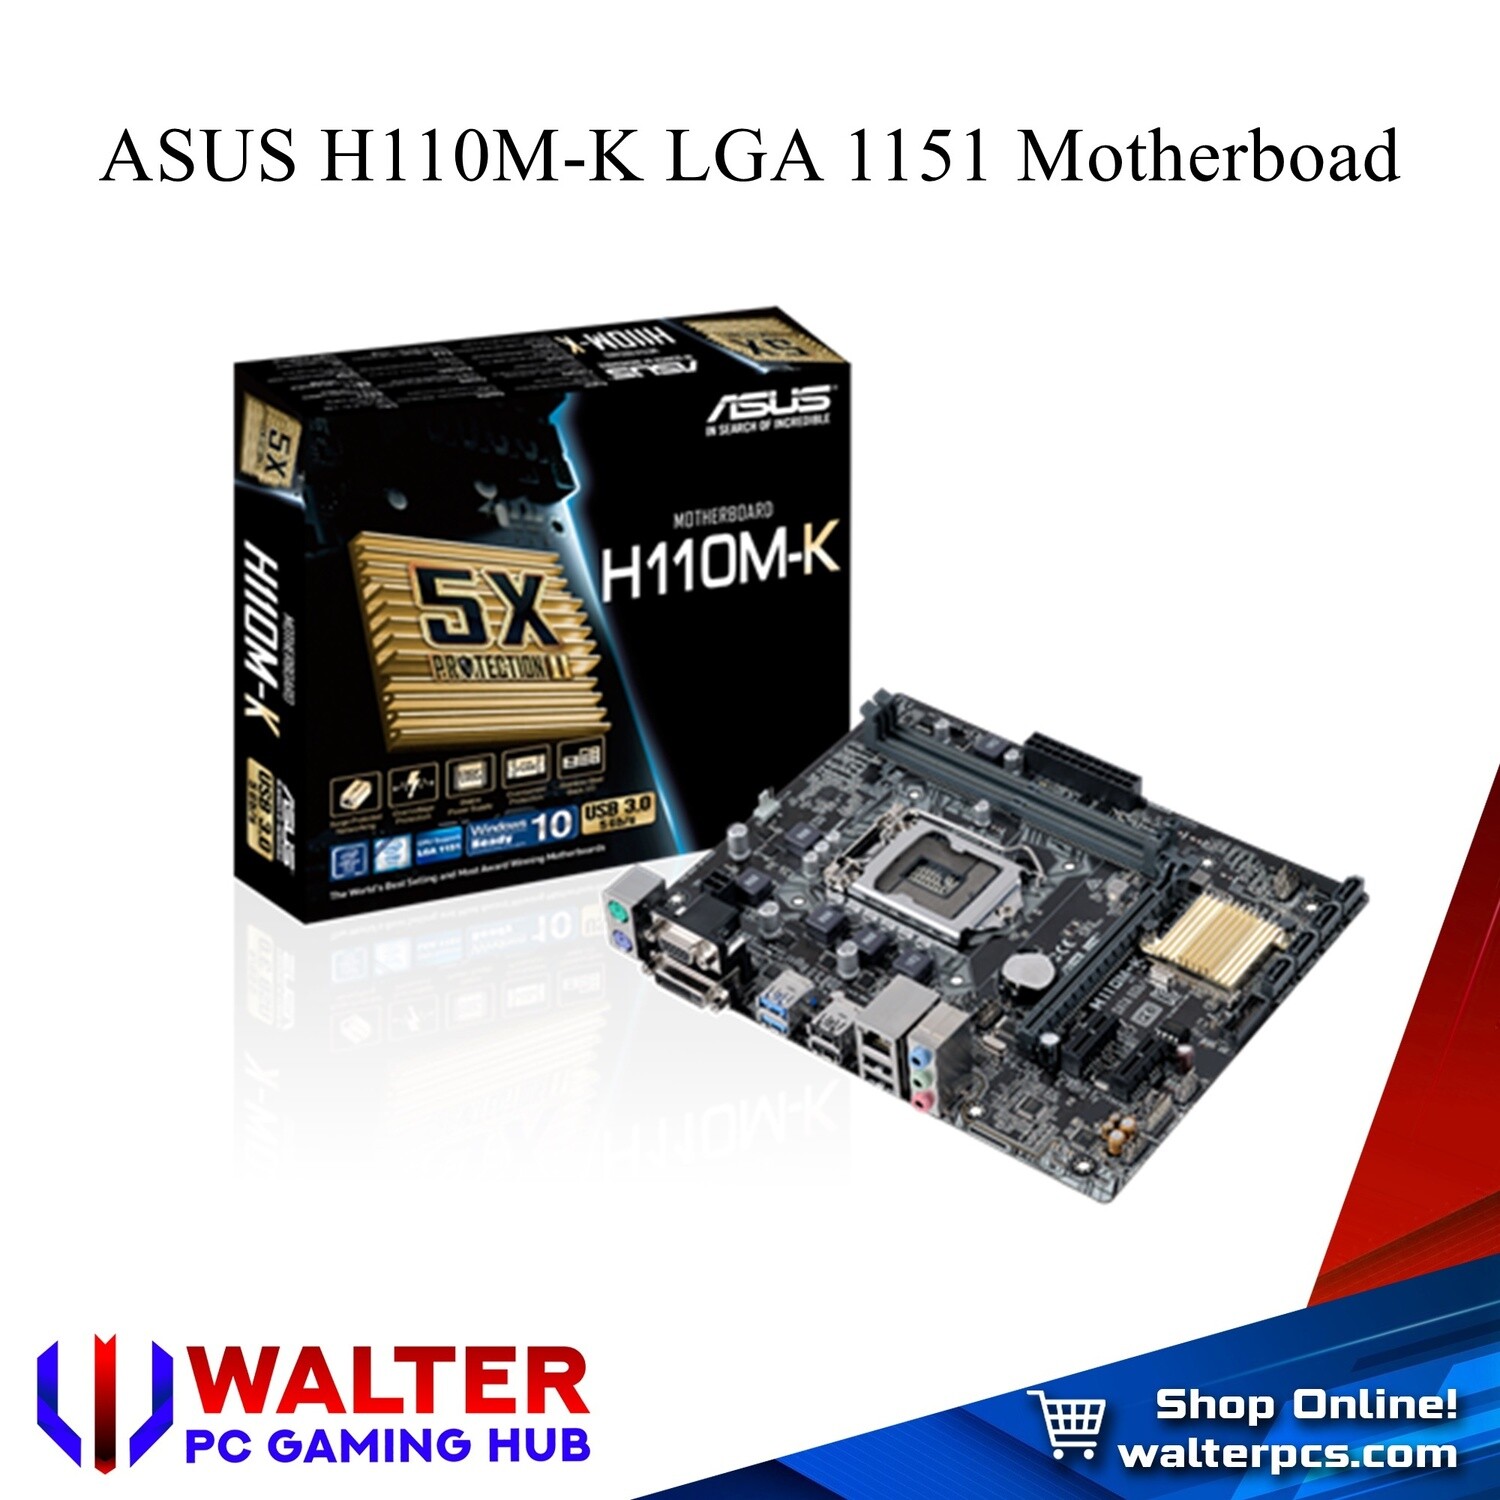 ASUS H110M-K LGA 1151 Motherboard